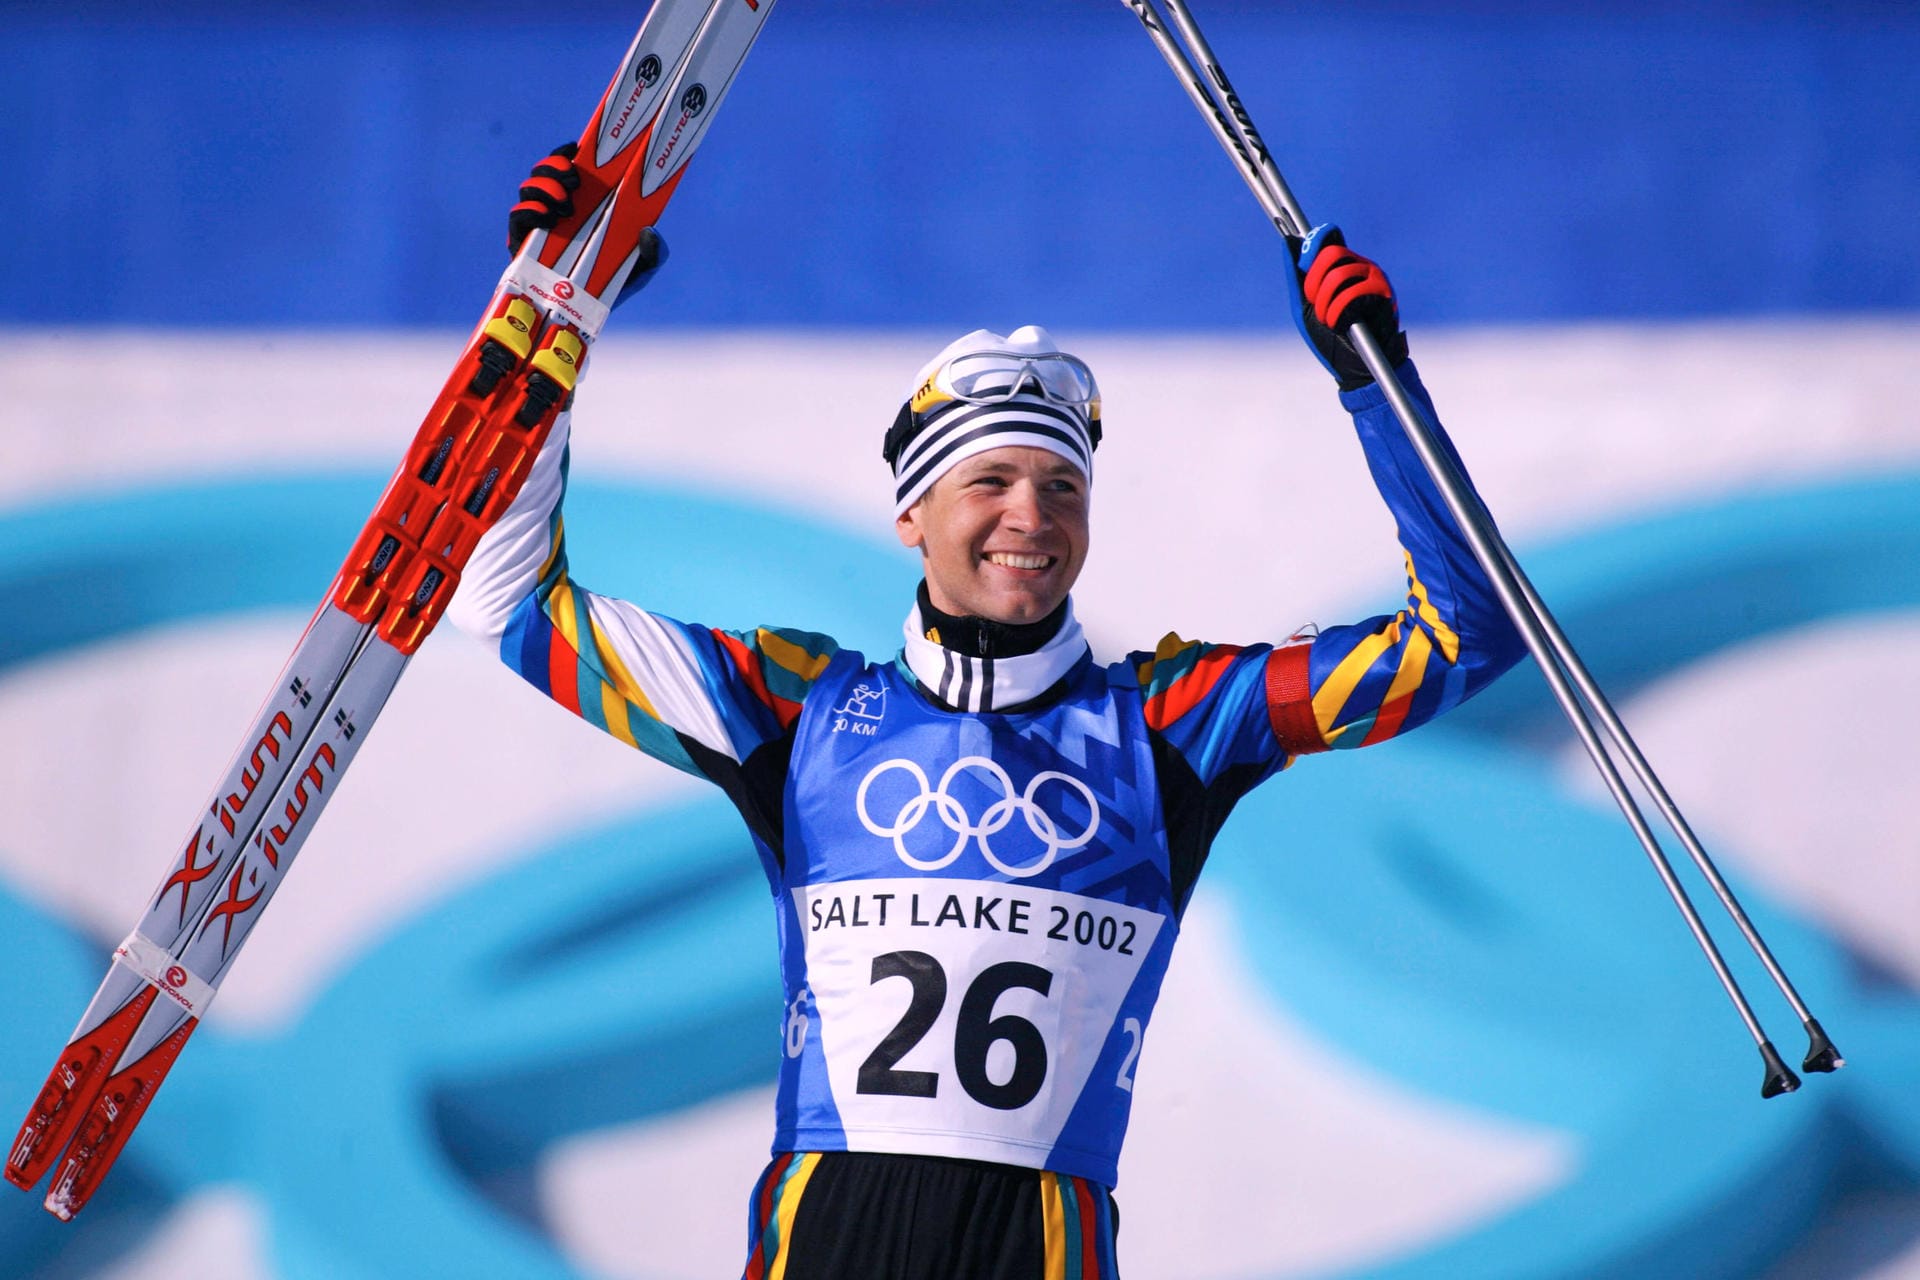 Platz 2: Ole Einar Bjørndalen (Biathlon, Norwegen) – 13 Medaillen: 8x Gold / 4x Silber / 1x Bronze zwischen 1998 und 2014.